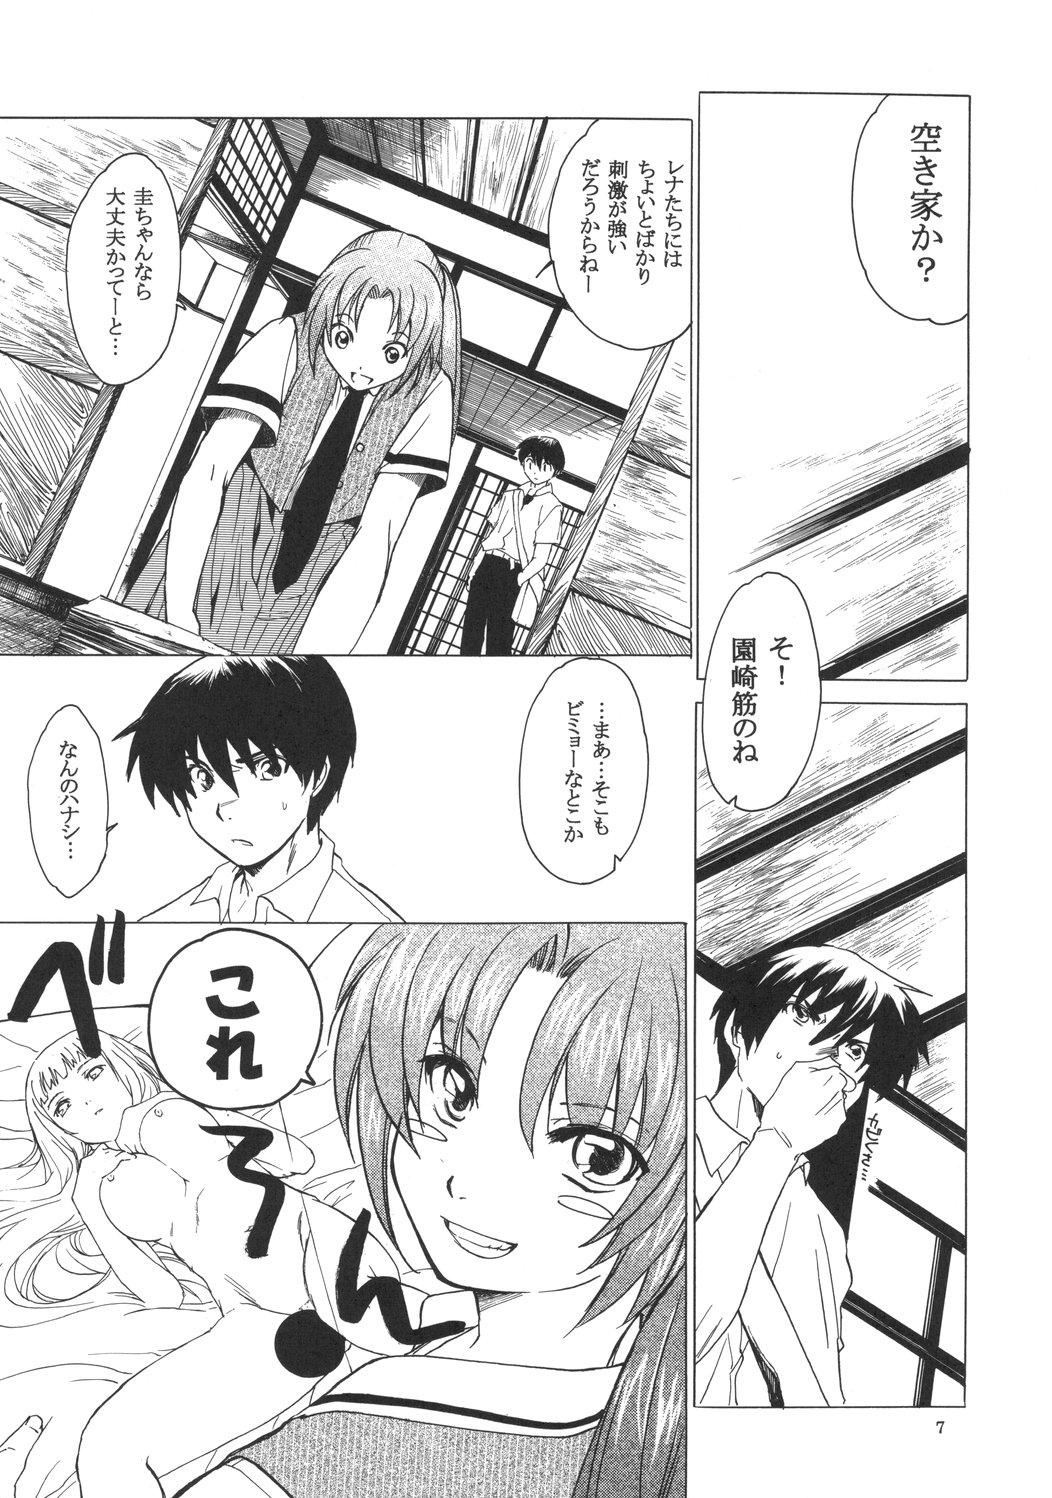 Story Manatsu no Oni - Higurashi no naku koro ni Clitoris - Page 6